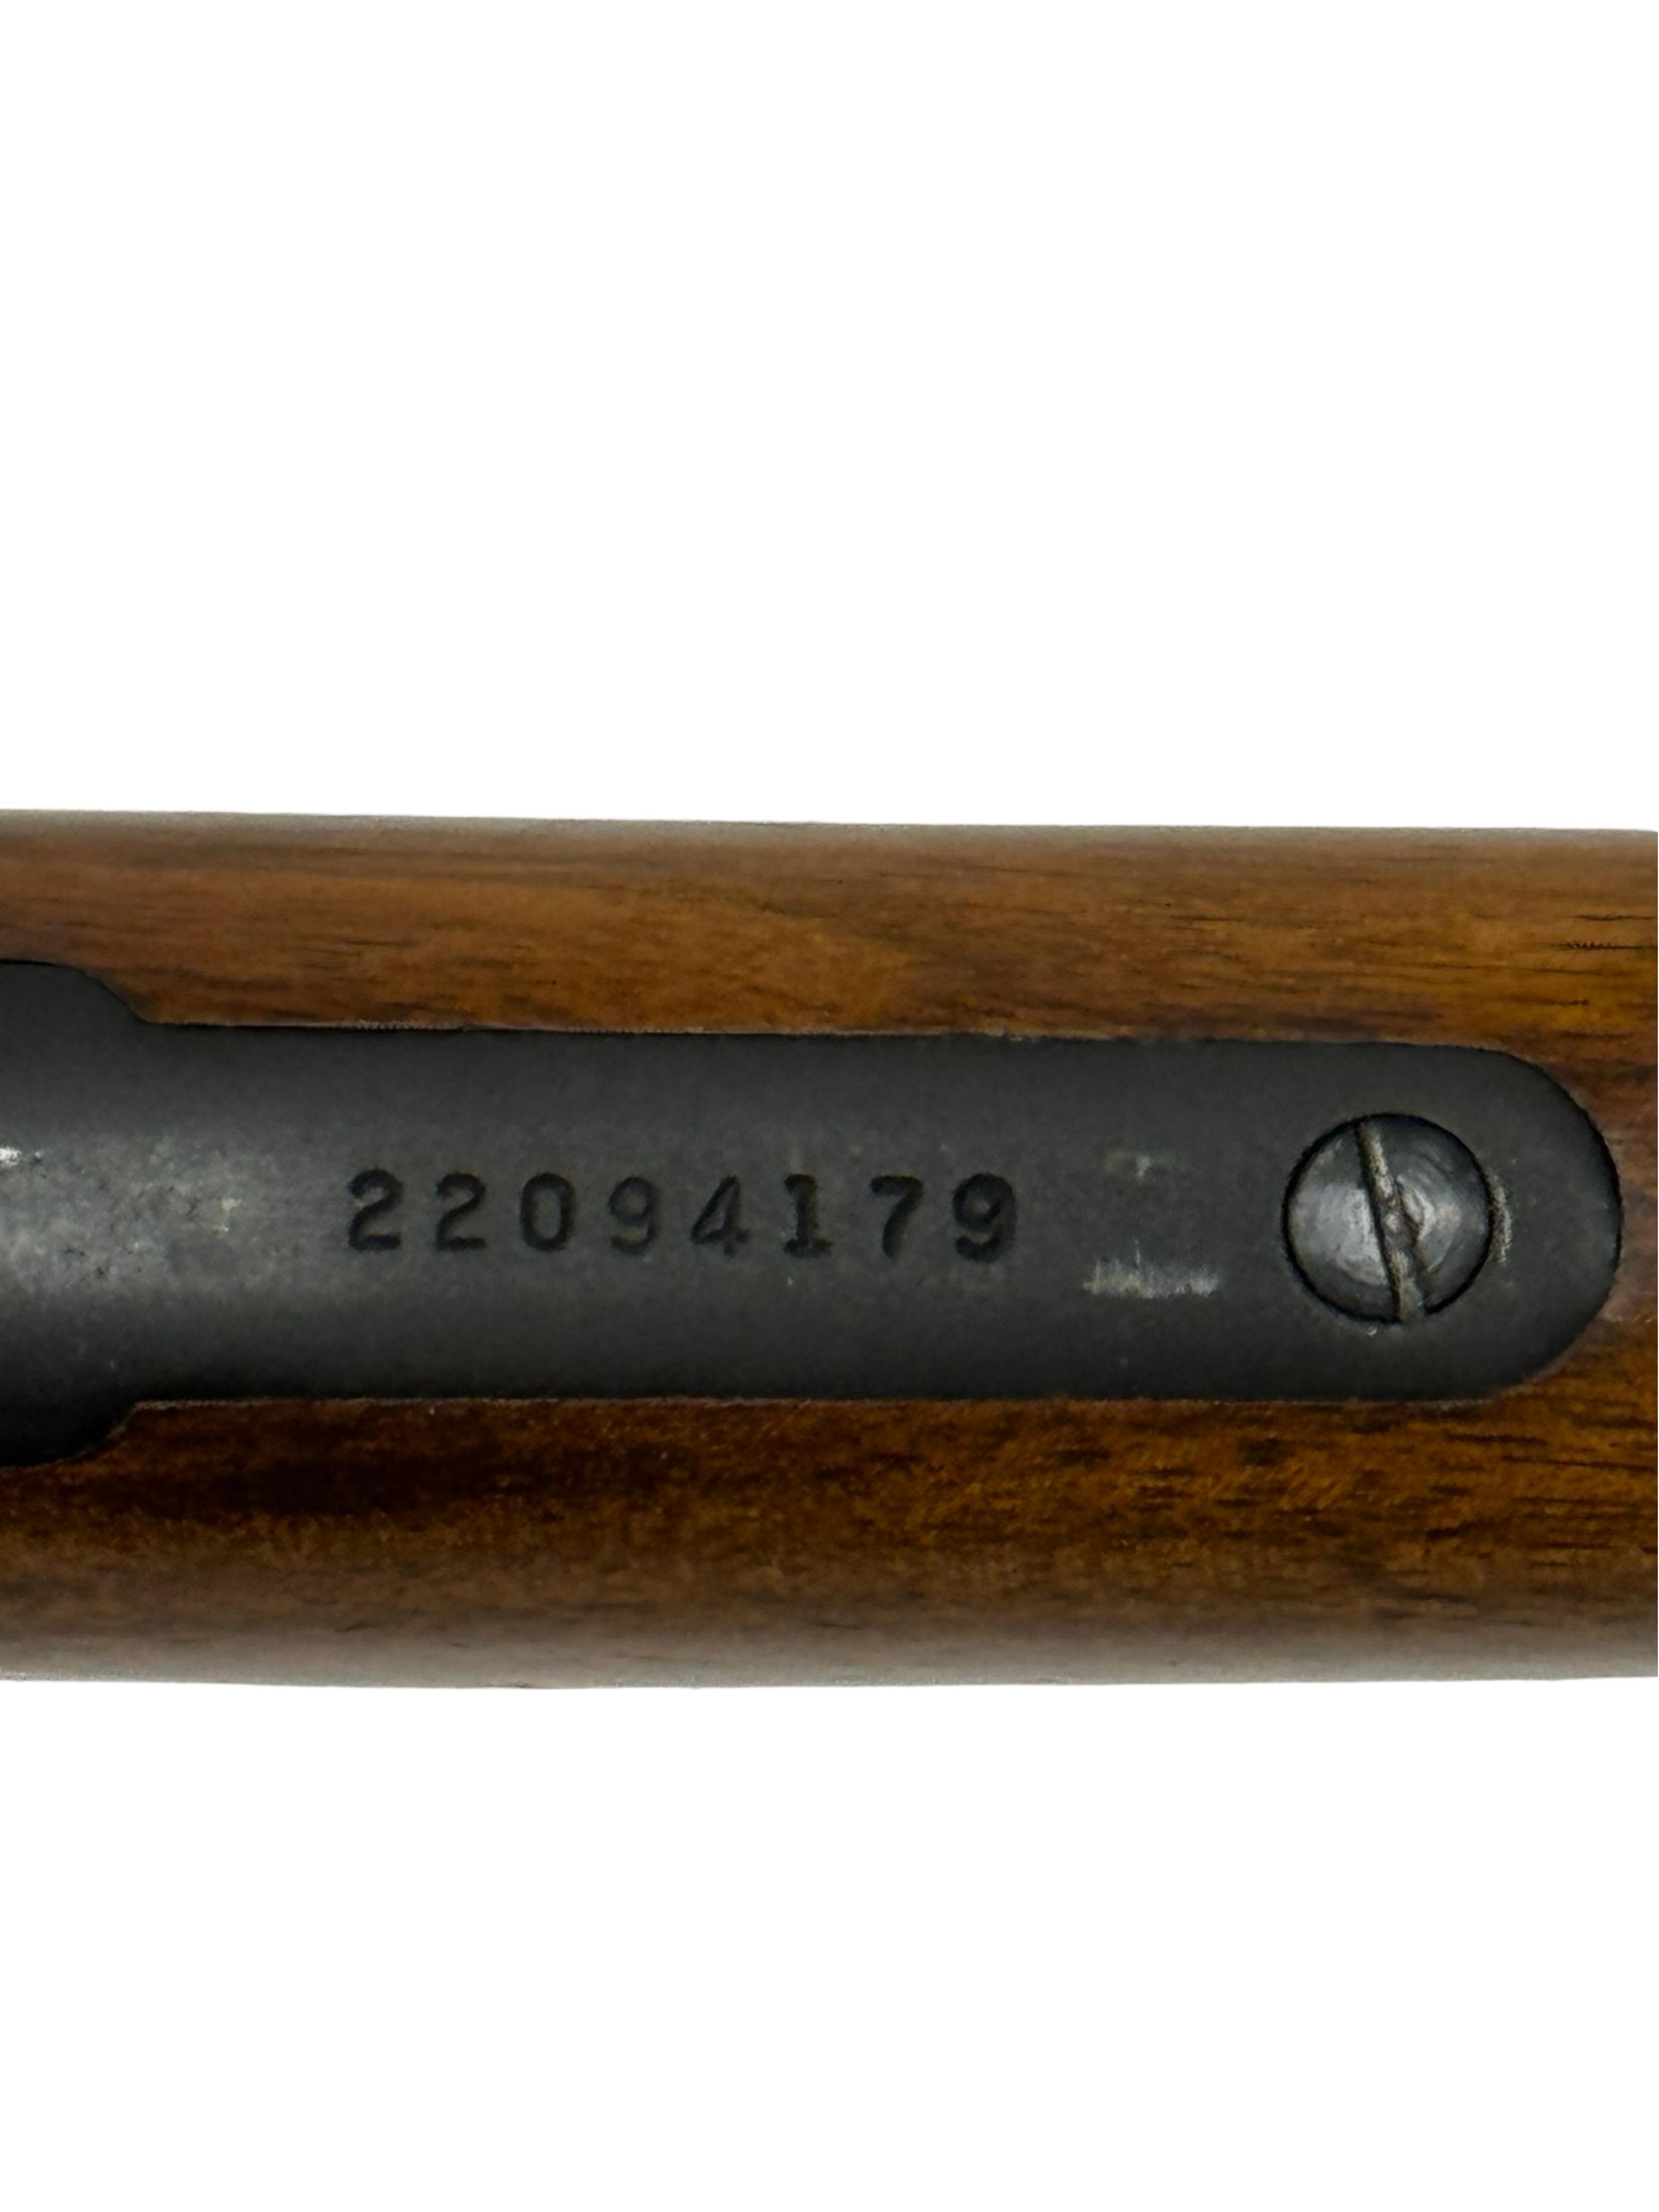 Excellent 1978 Marlin Model 1894 Lever Action .44 REM. MAG. “JM” Rifle